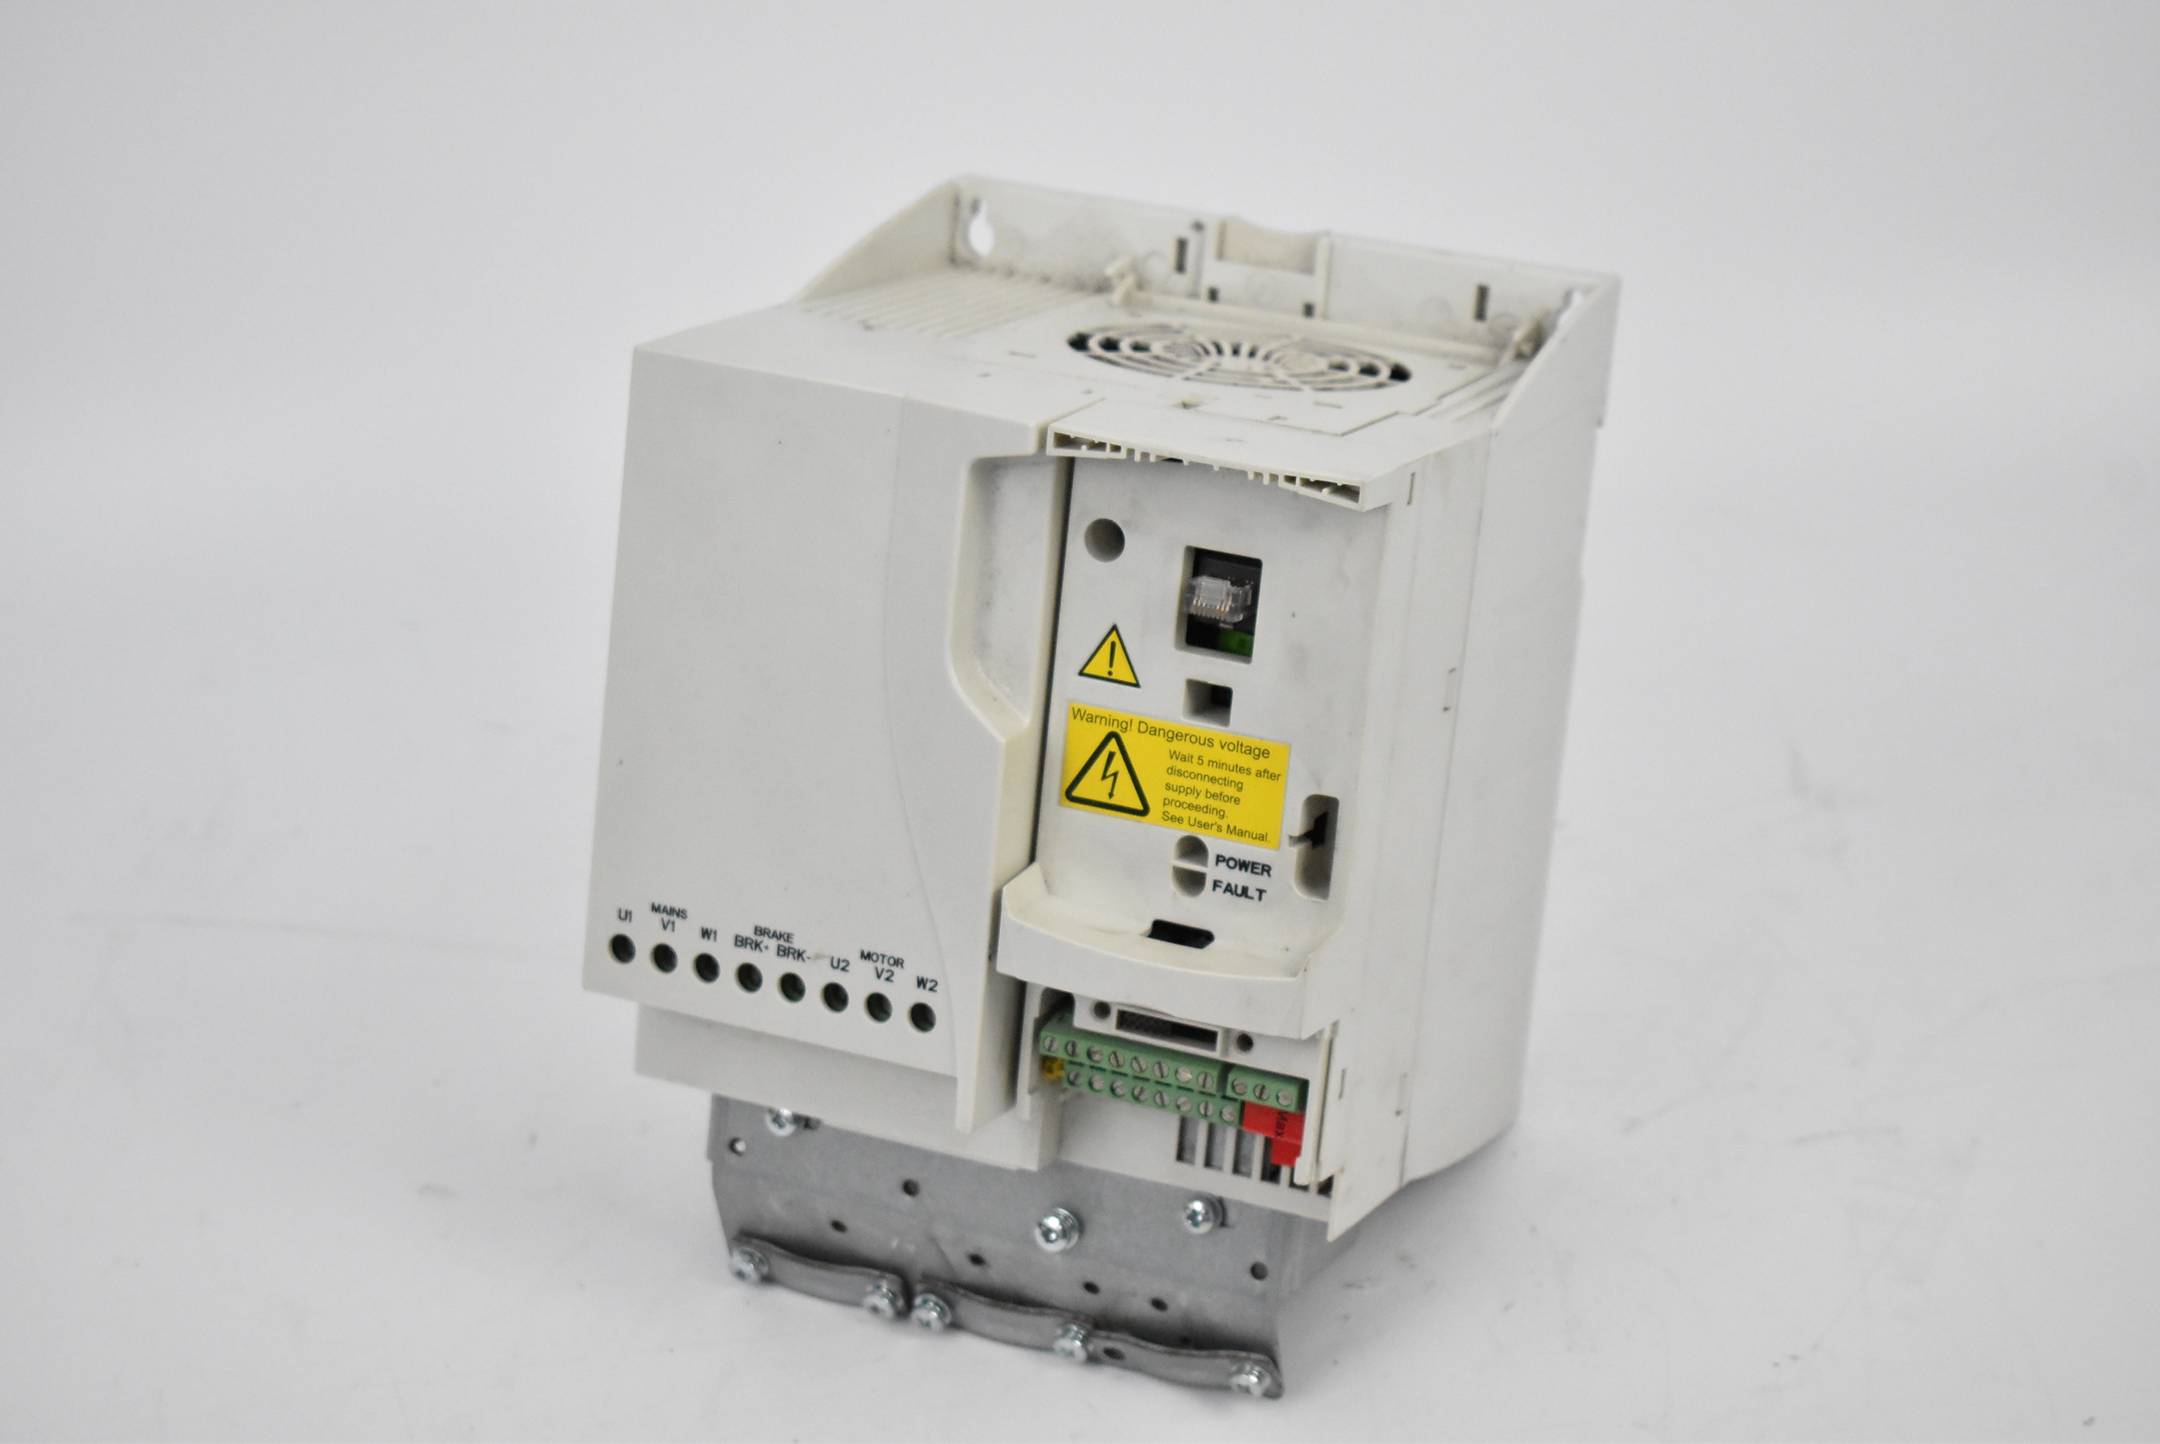 ABB ACS350 Frequenzumrichter ACS350-03E-23A1-4